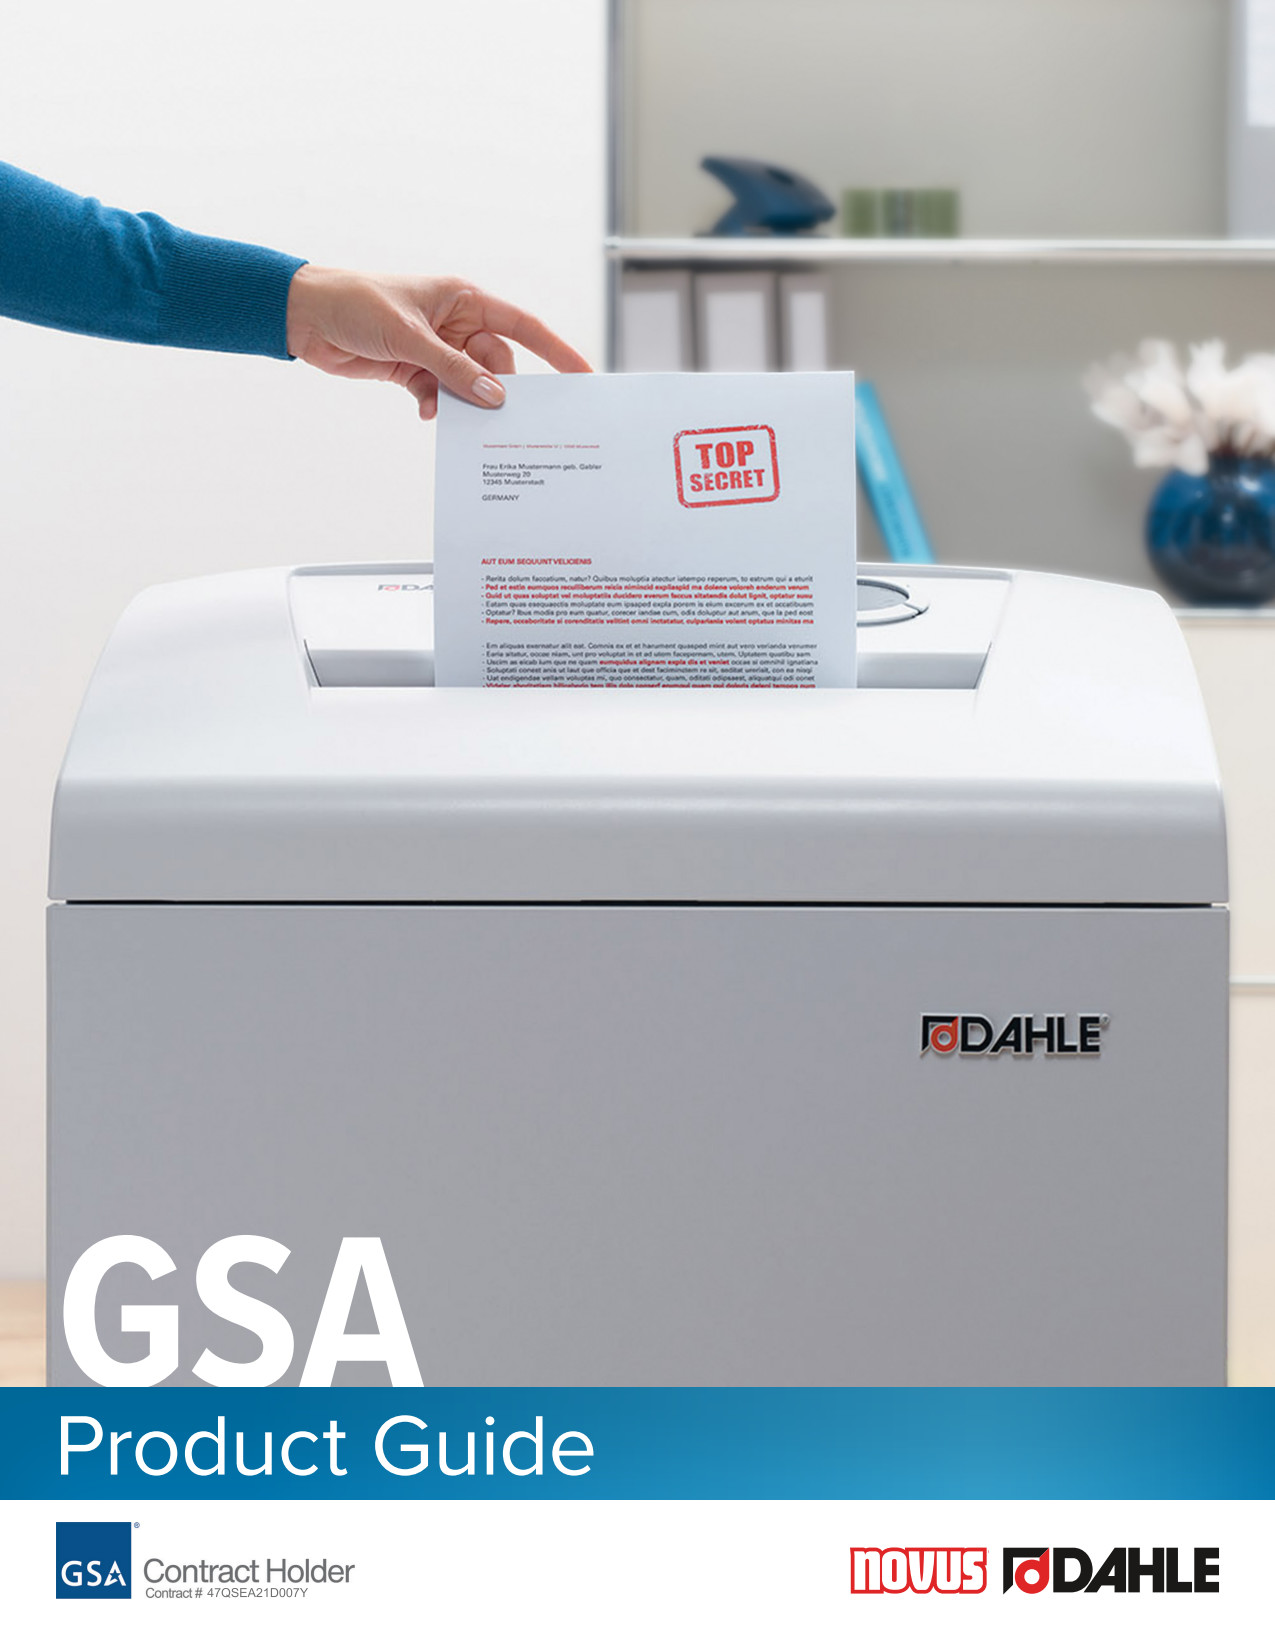 DahleGov GSA Product Guide